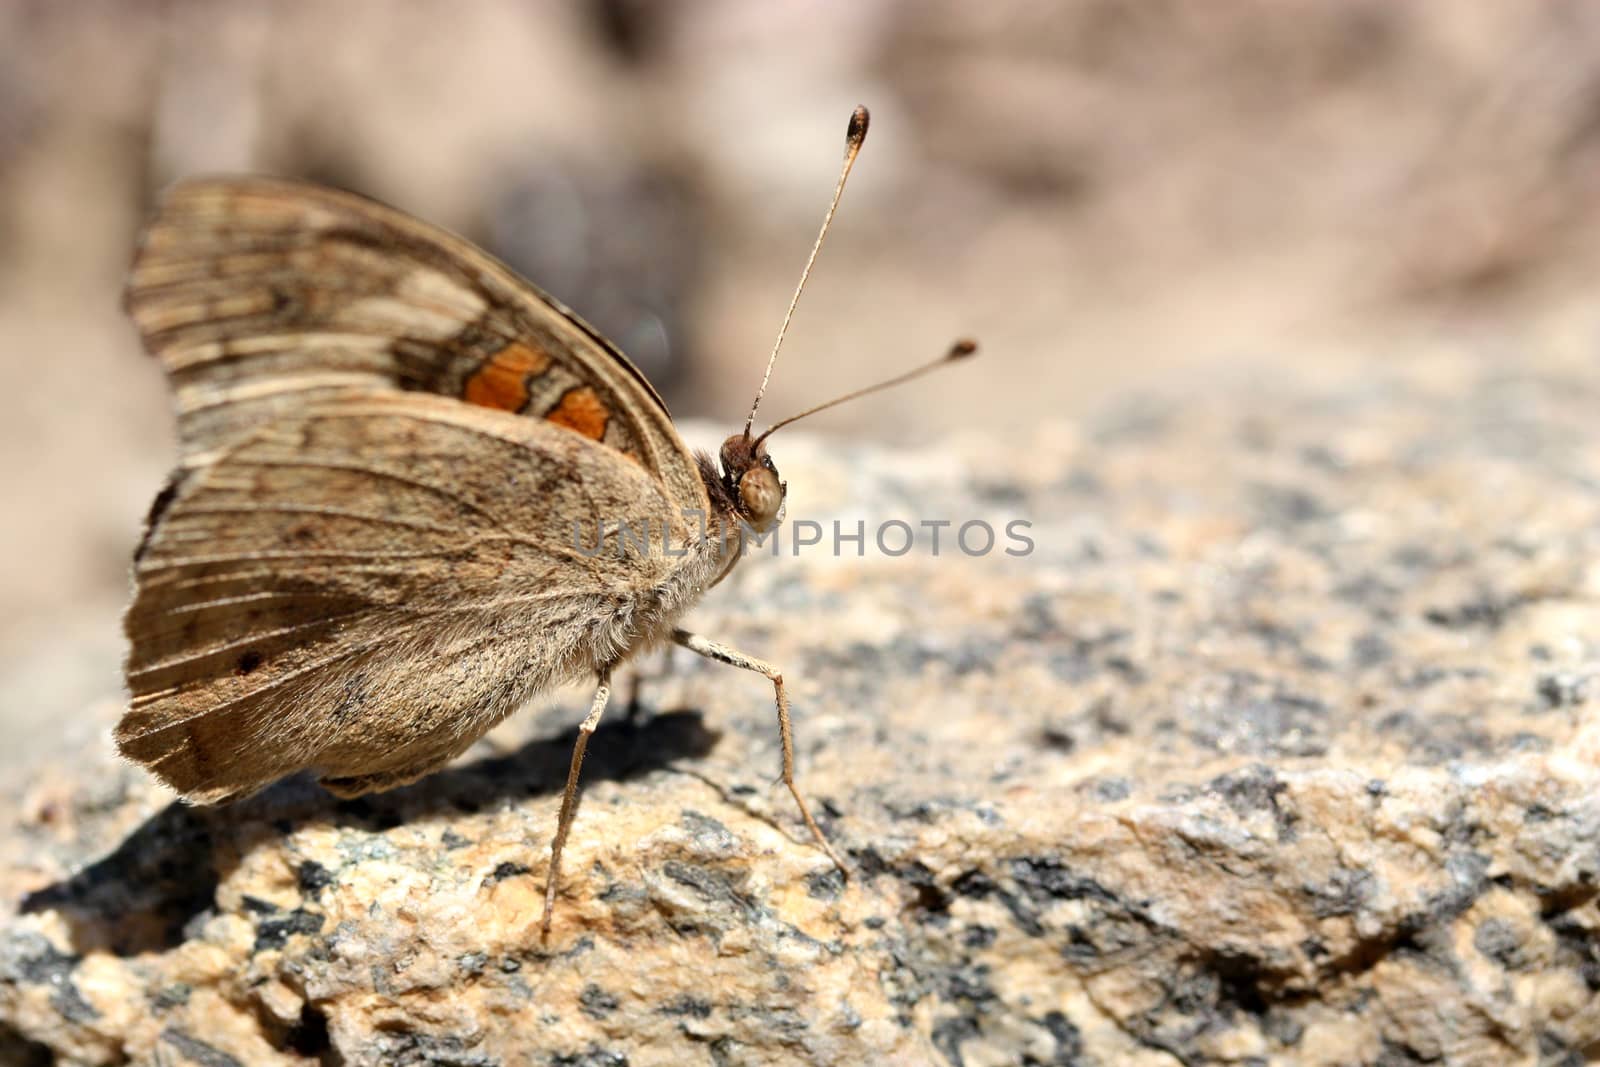 Buckeye Butterfly on the rock by ziss